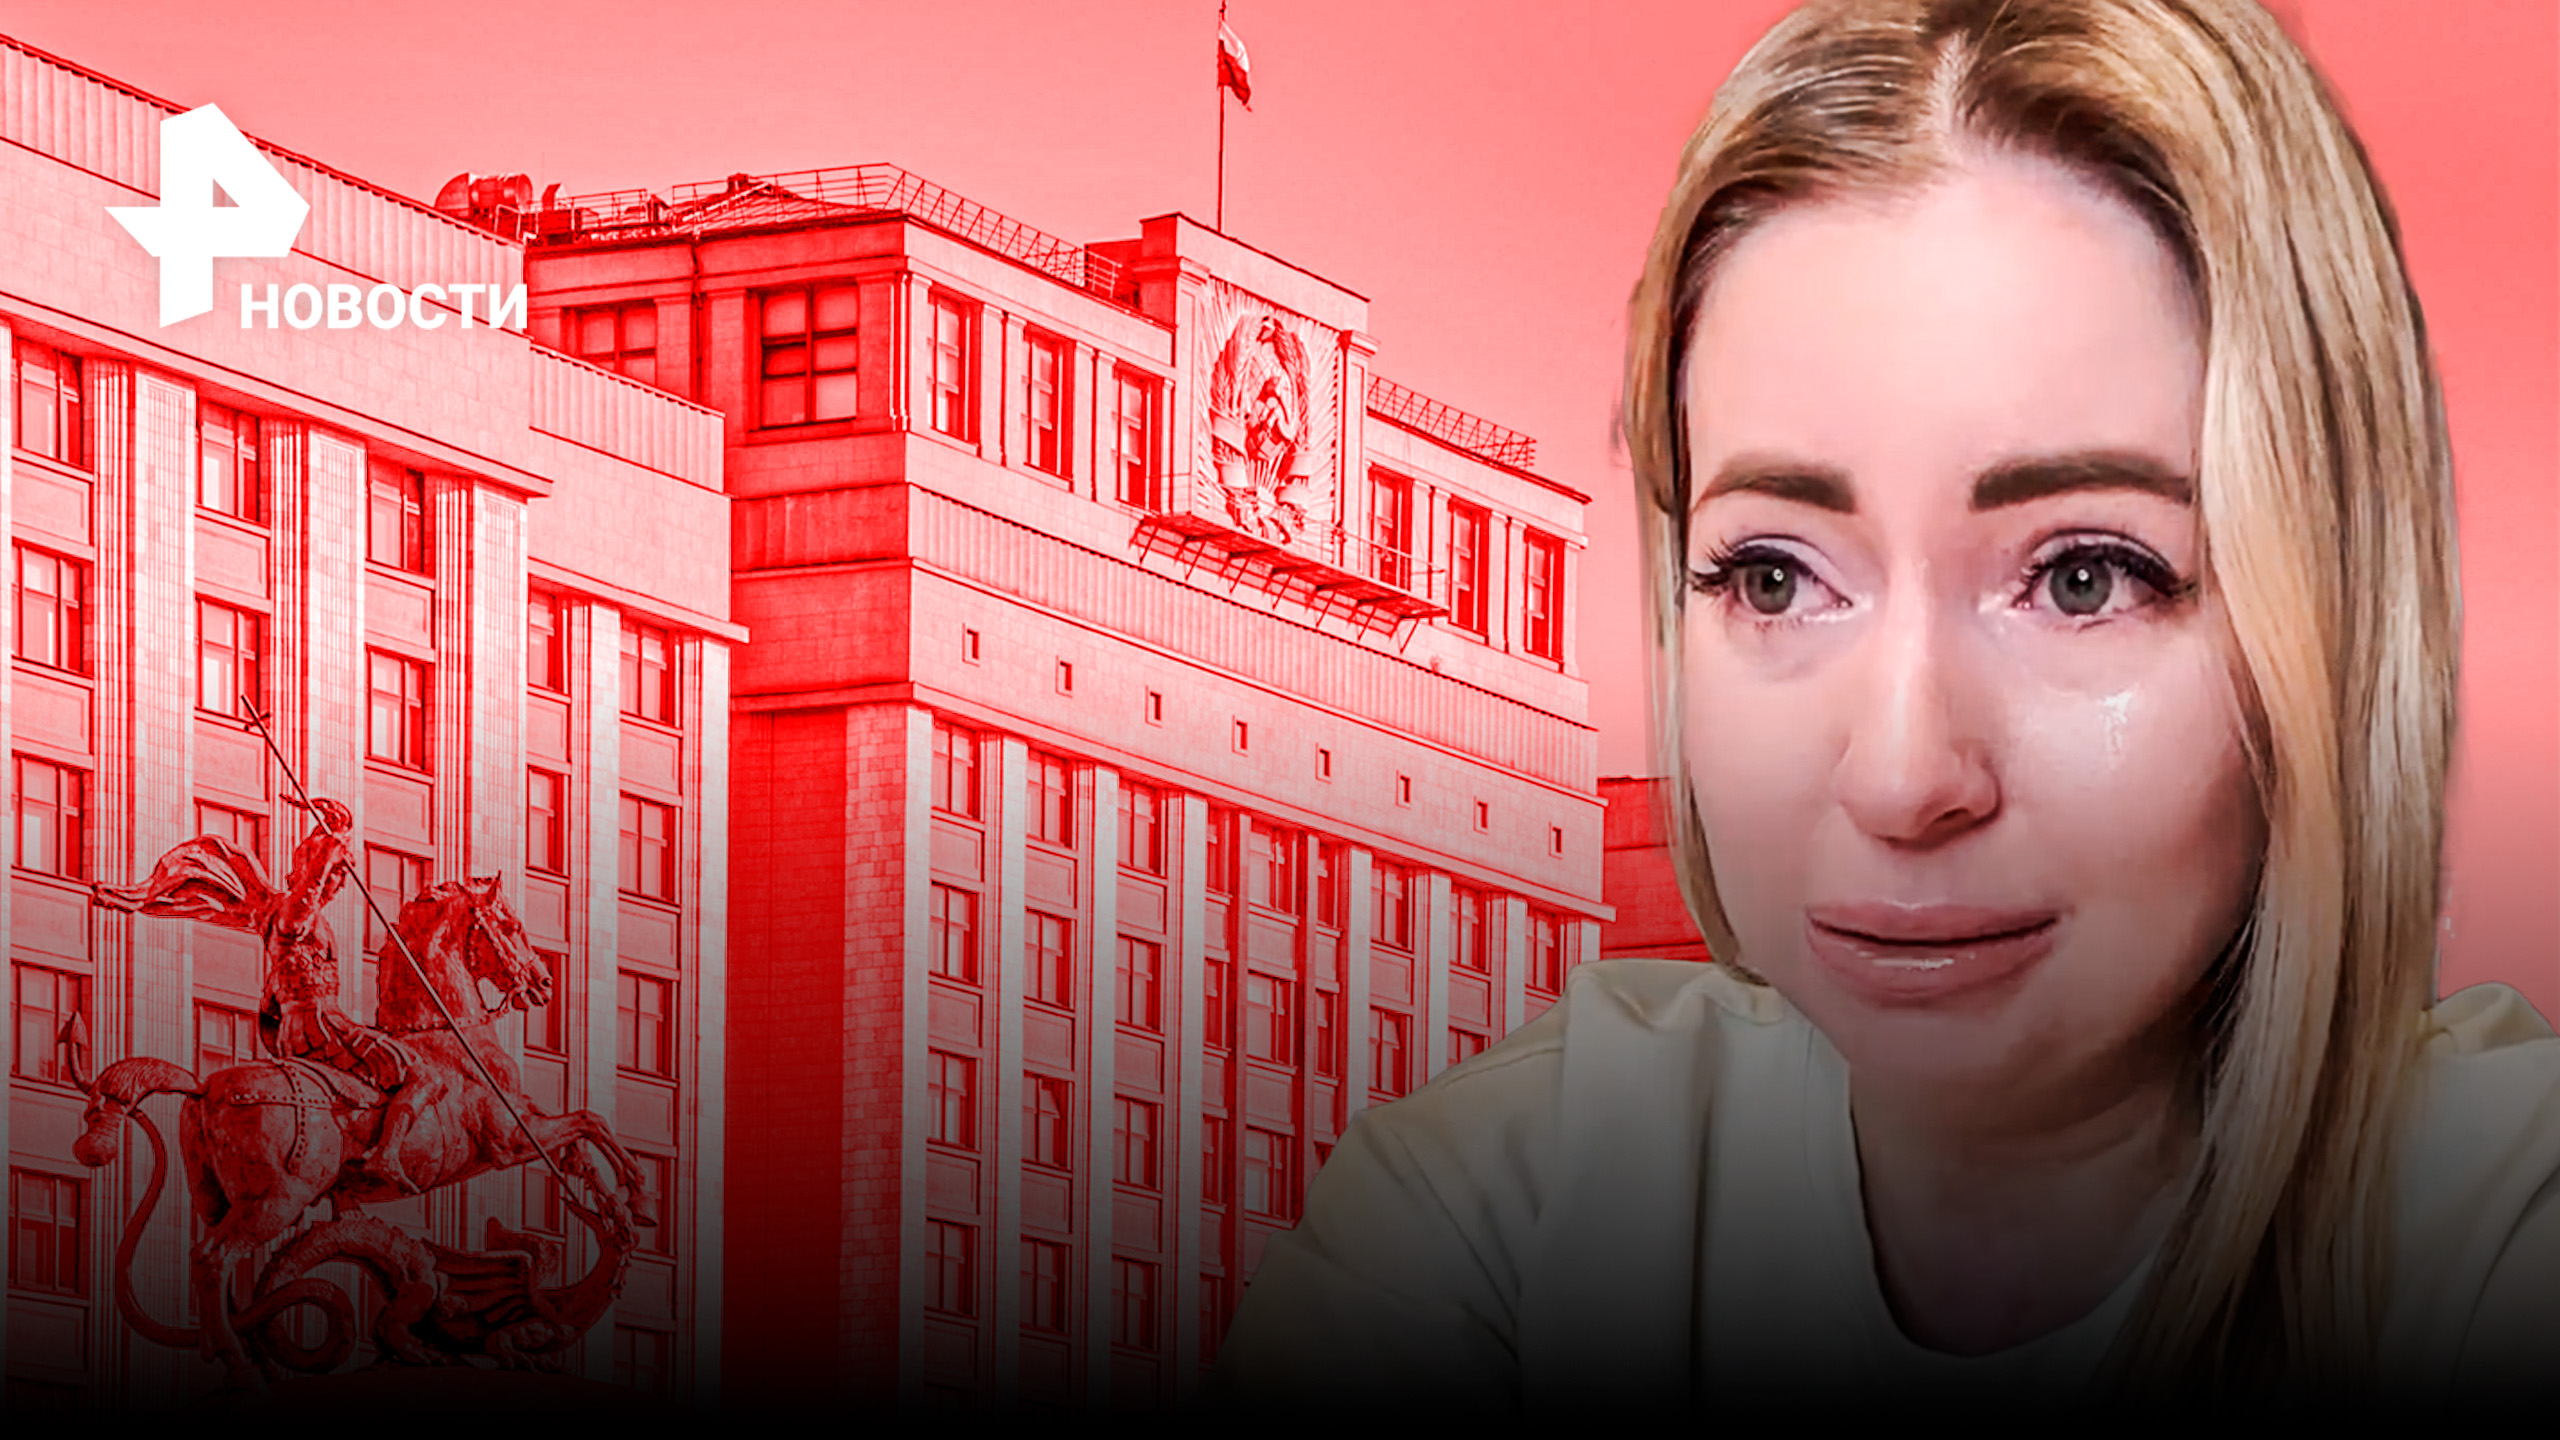 Королева сухого льда Диденко разрыдалась из-за отмены ее выступления в Госдуме / РЕН Новости